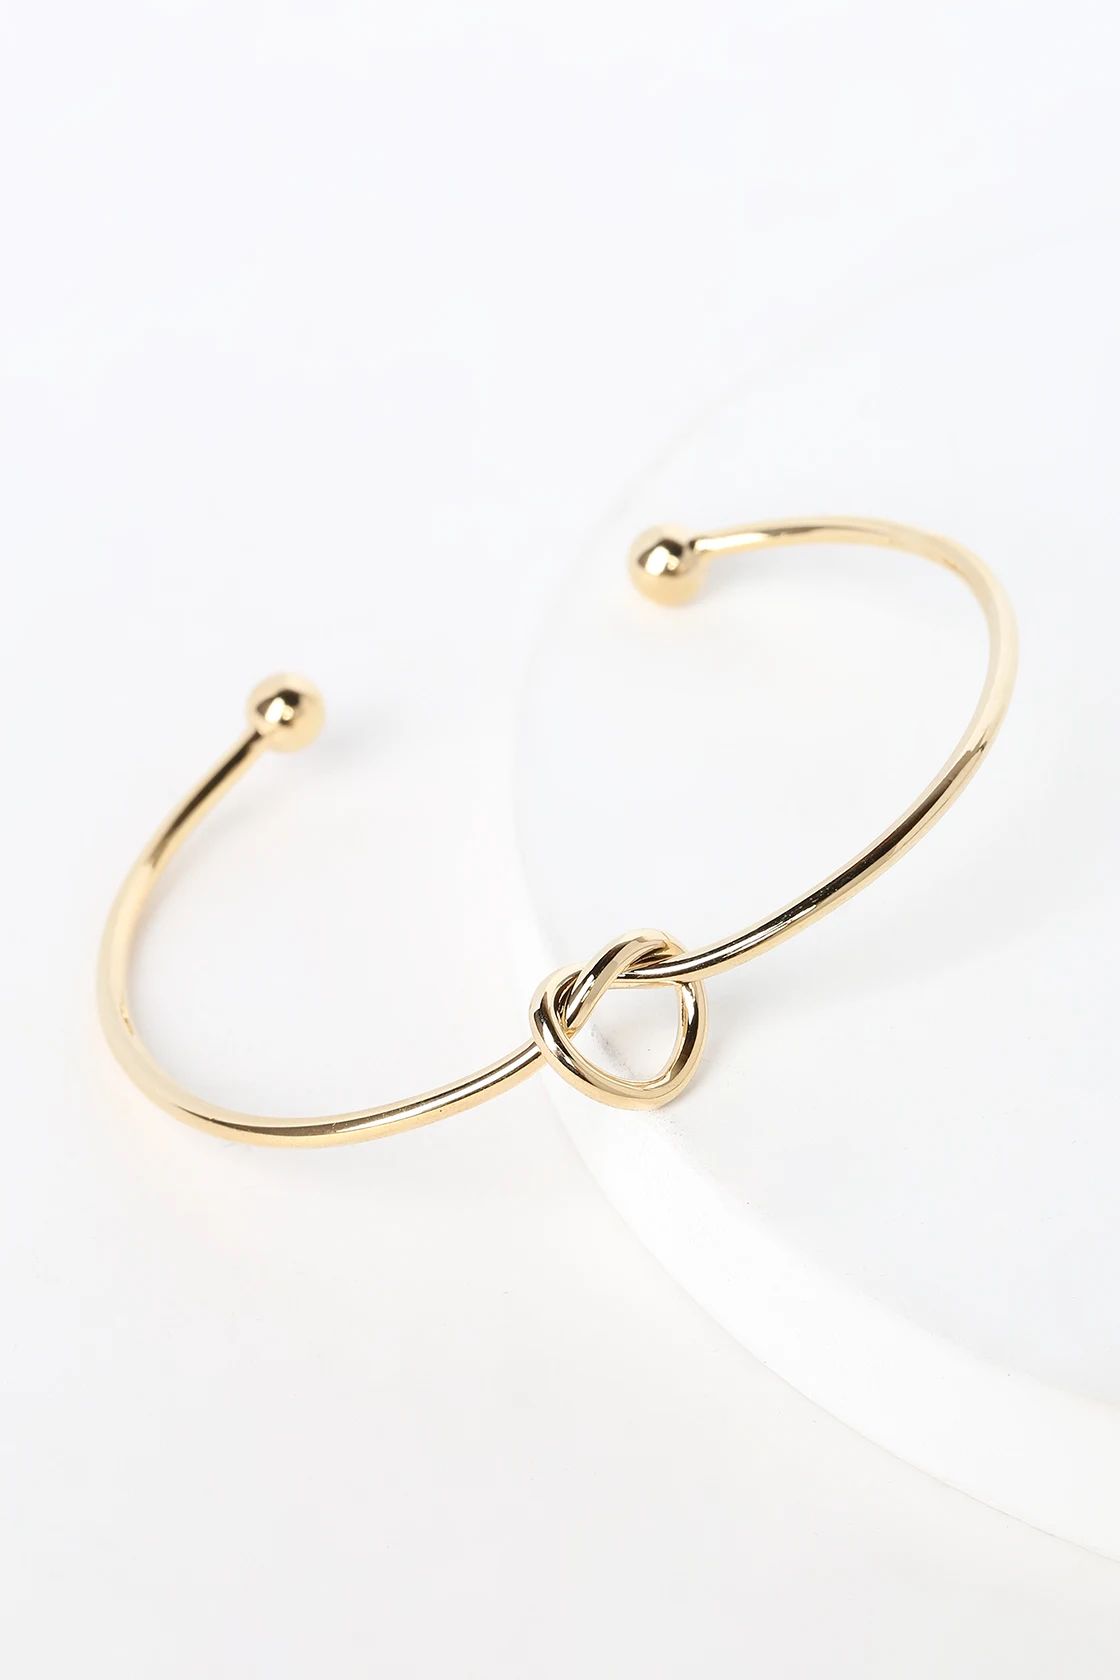 Let's Tie the Knot Gold Bracelet | Lulus